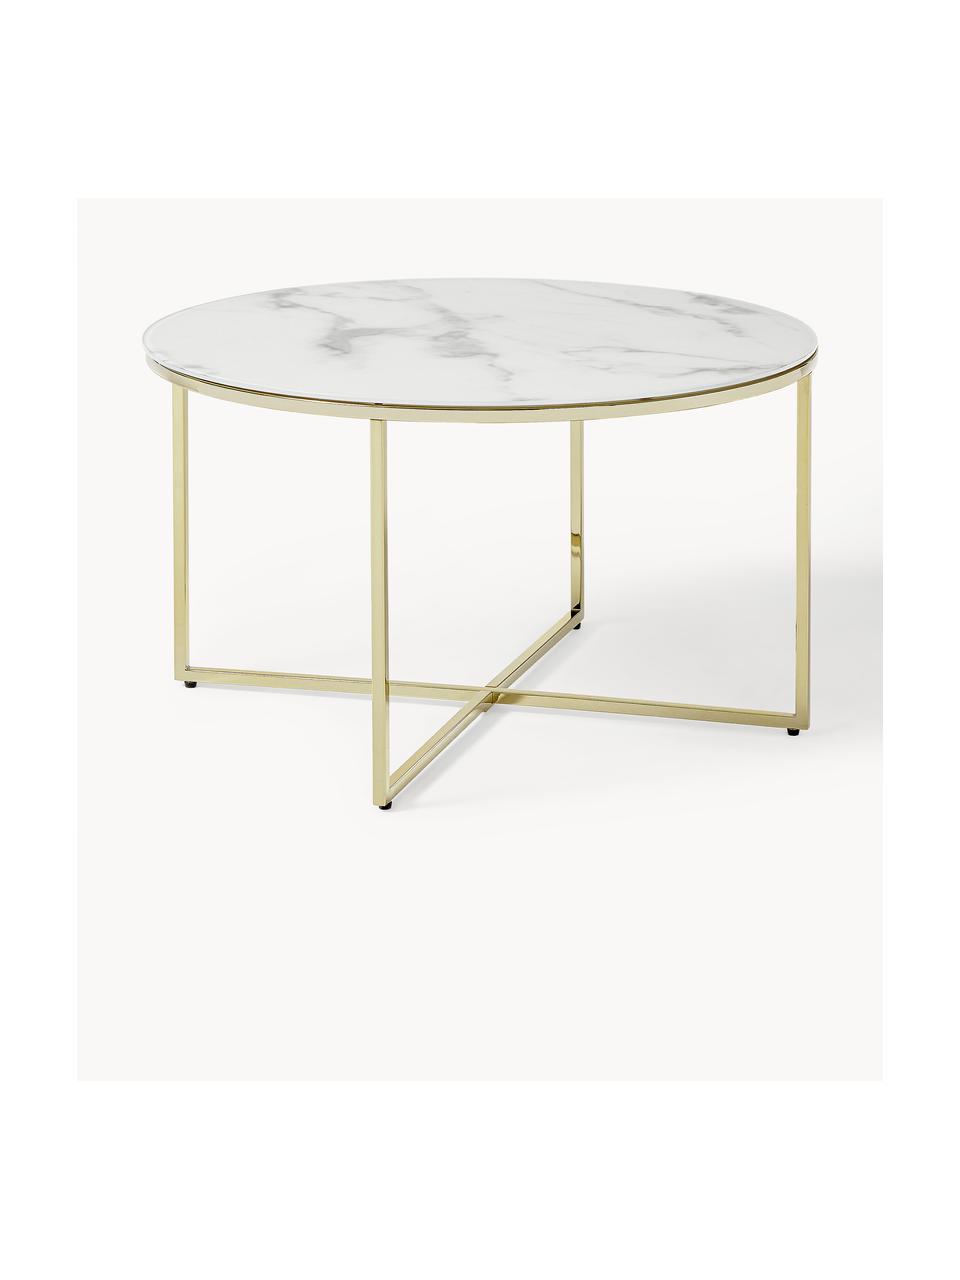 Kulatý konferenční stolek se skleněnou deskou v mramorovém vzhledu Antigua, Bílá v mramorovém vzhledu, lesklá zlatá, Ø 80 cm